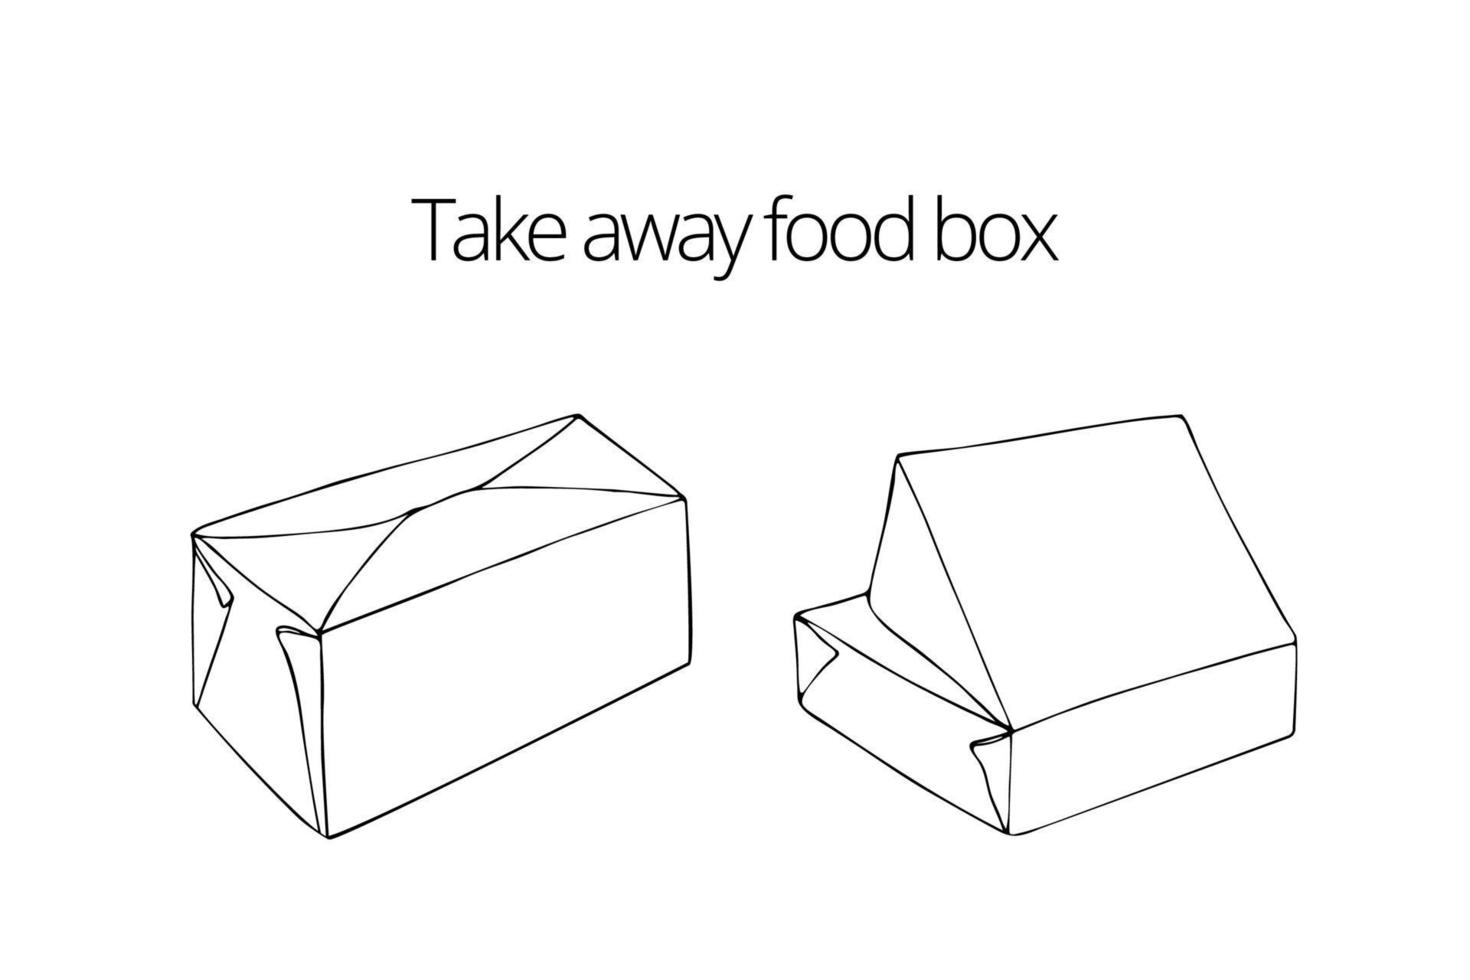 remover. pacotes para entrega. um conjunto de duas caixas. esboço, desenhado à mão, vetor isolado em um fundo branco.